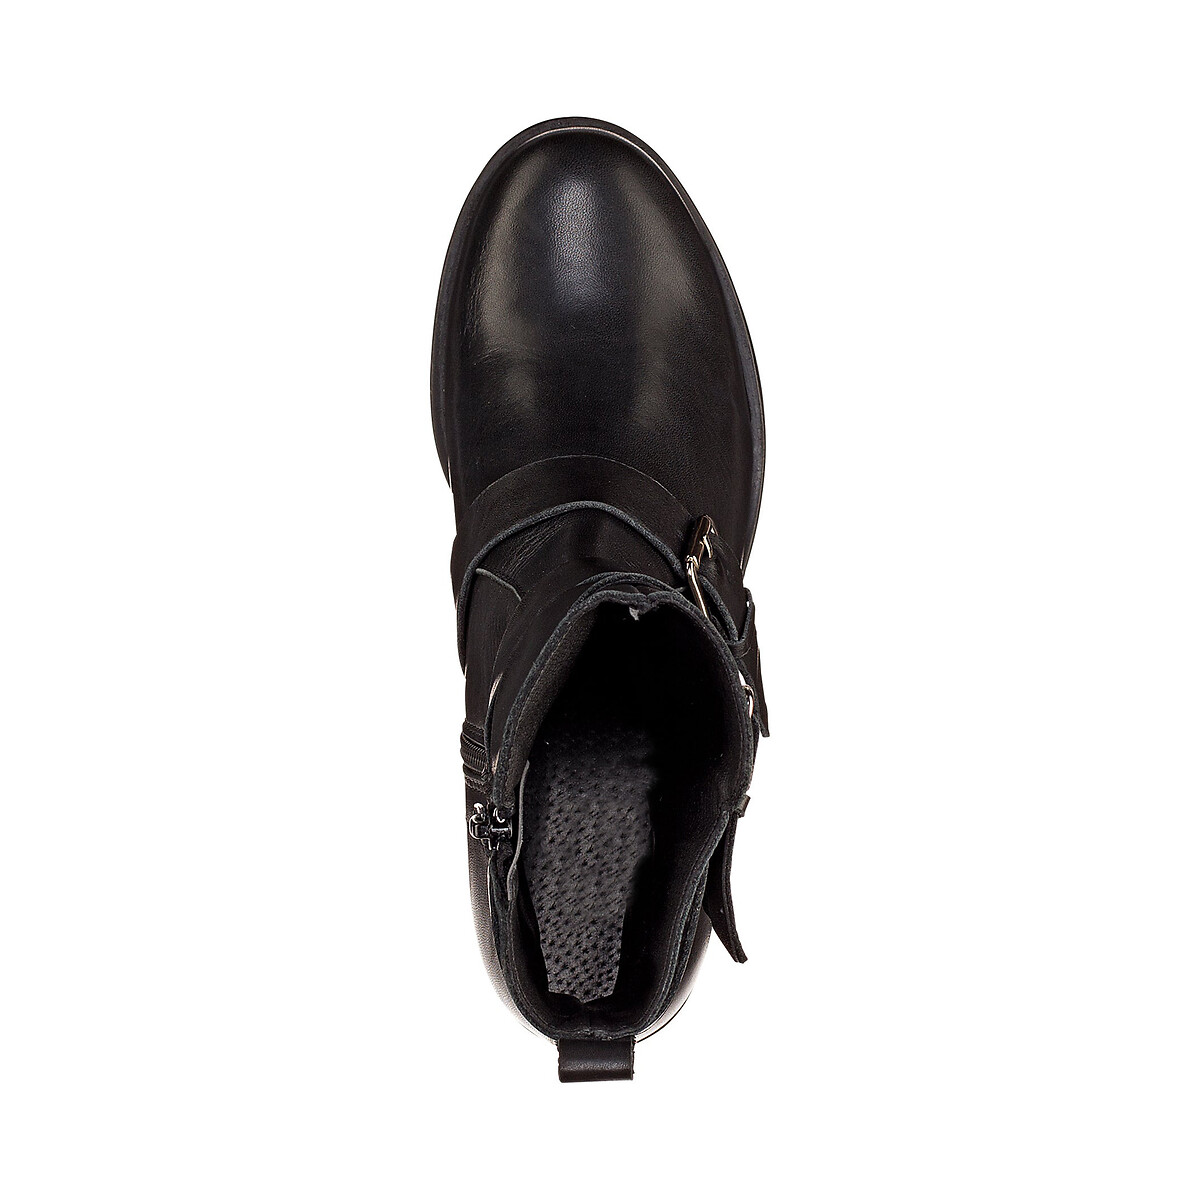 Ботинки La Redoute Кожаные в байкерском стиле 37 черный, размер 37 - фото 3